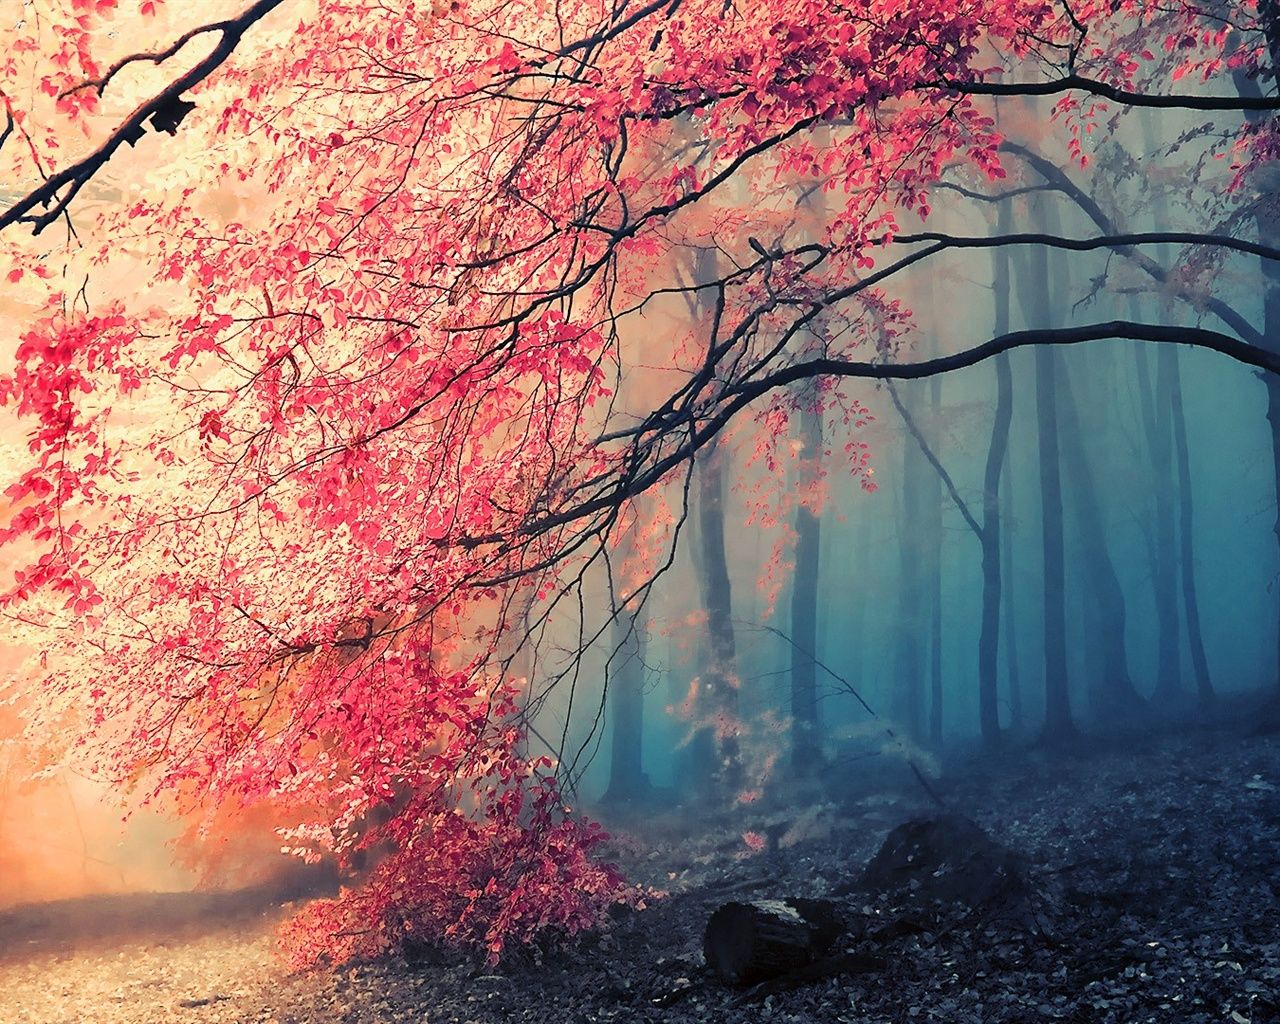 Schönste Hintergrundbild 1280x1024. Schöne Herbst Baum rote Blätter im Wald 1920x1080 Full HD 2K Hintergrundbilder, HD, Bild